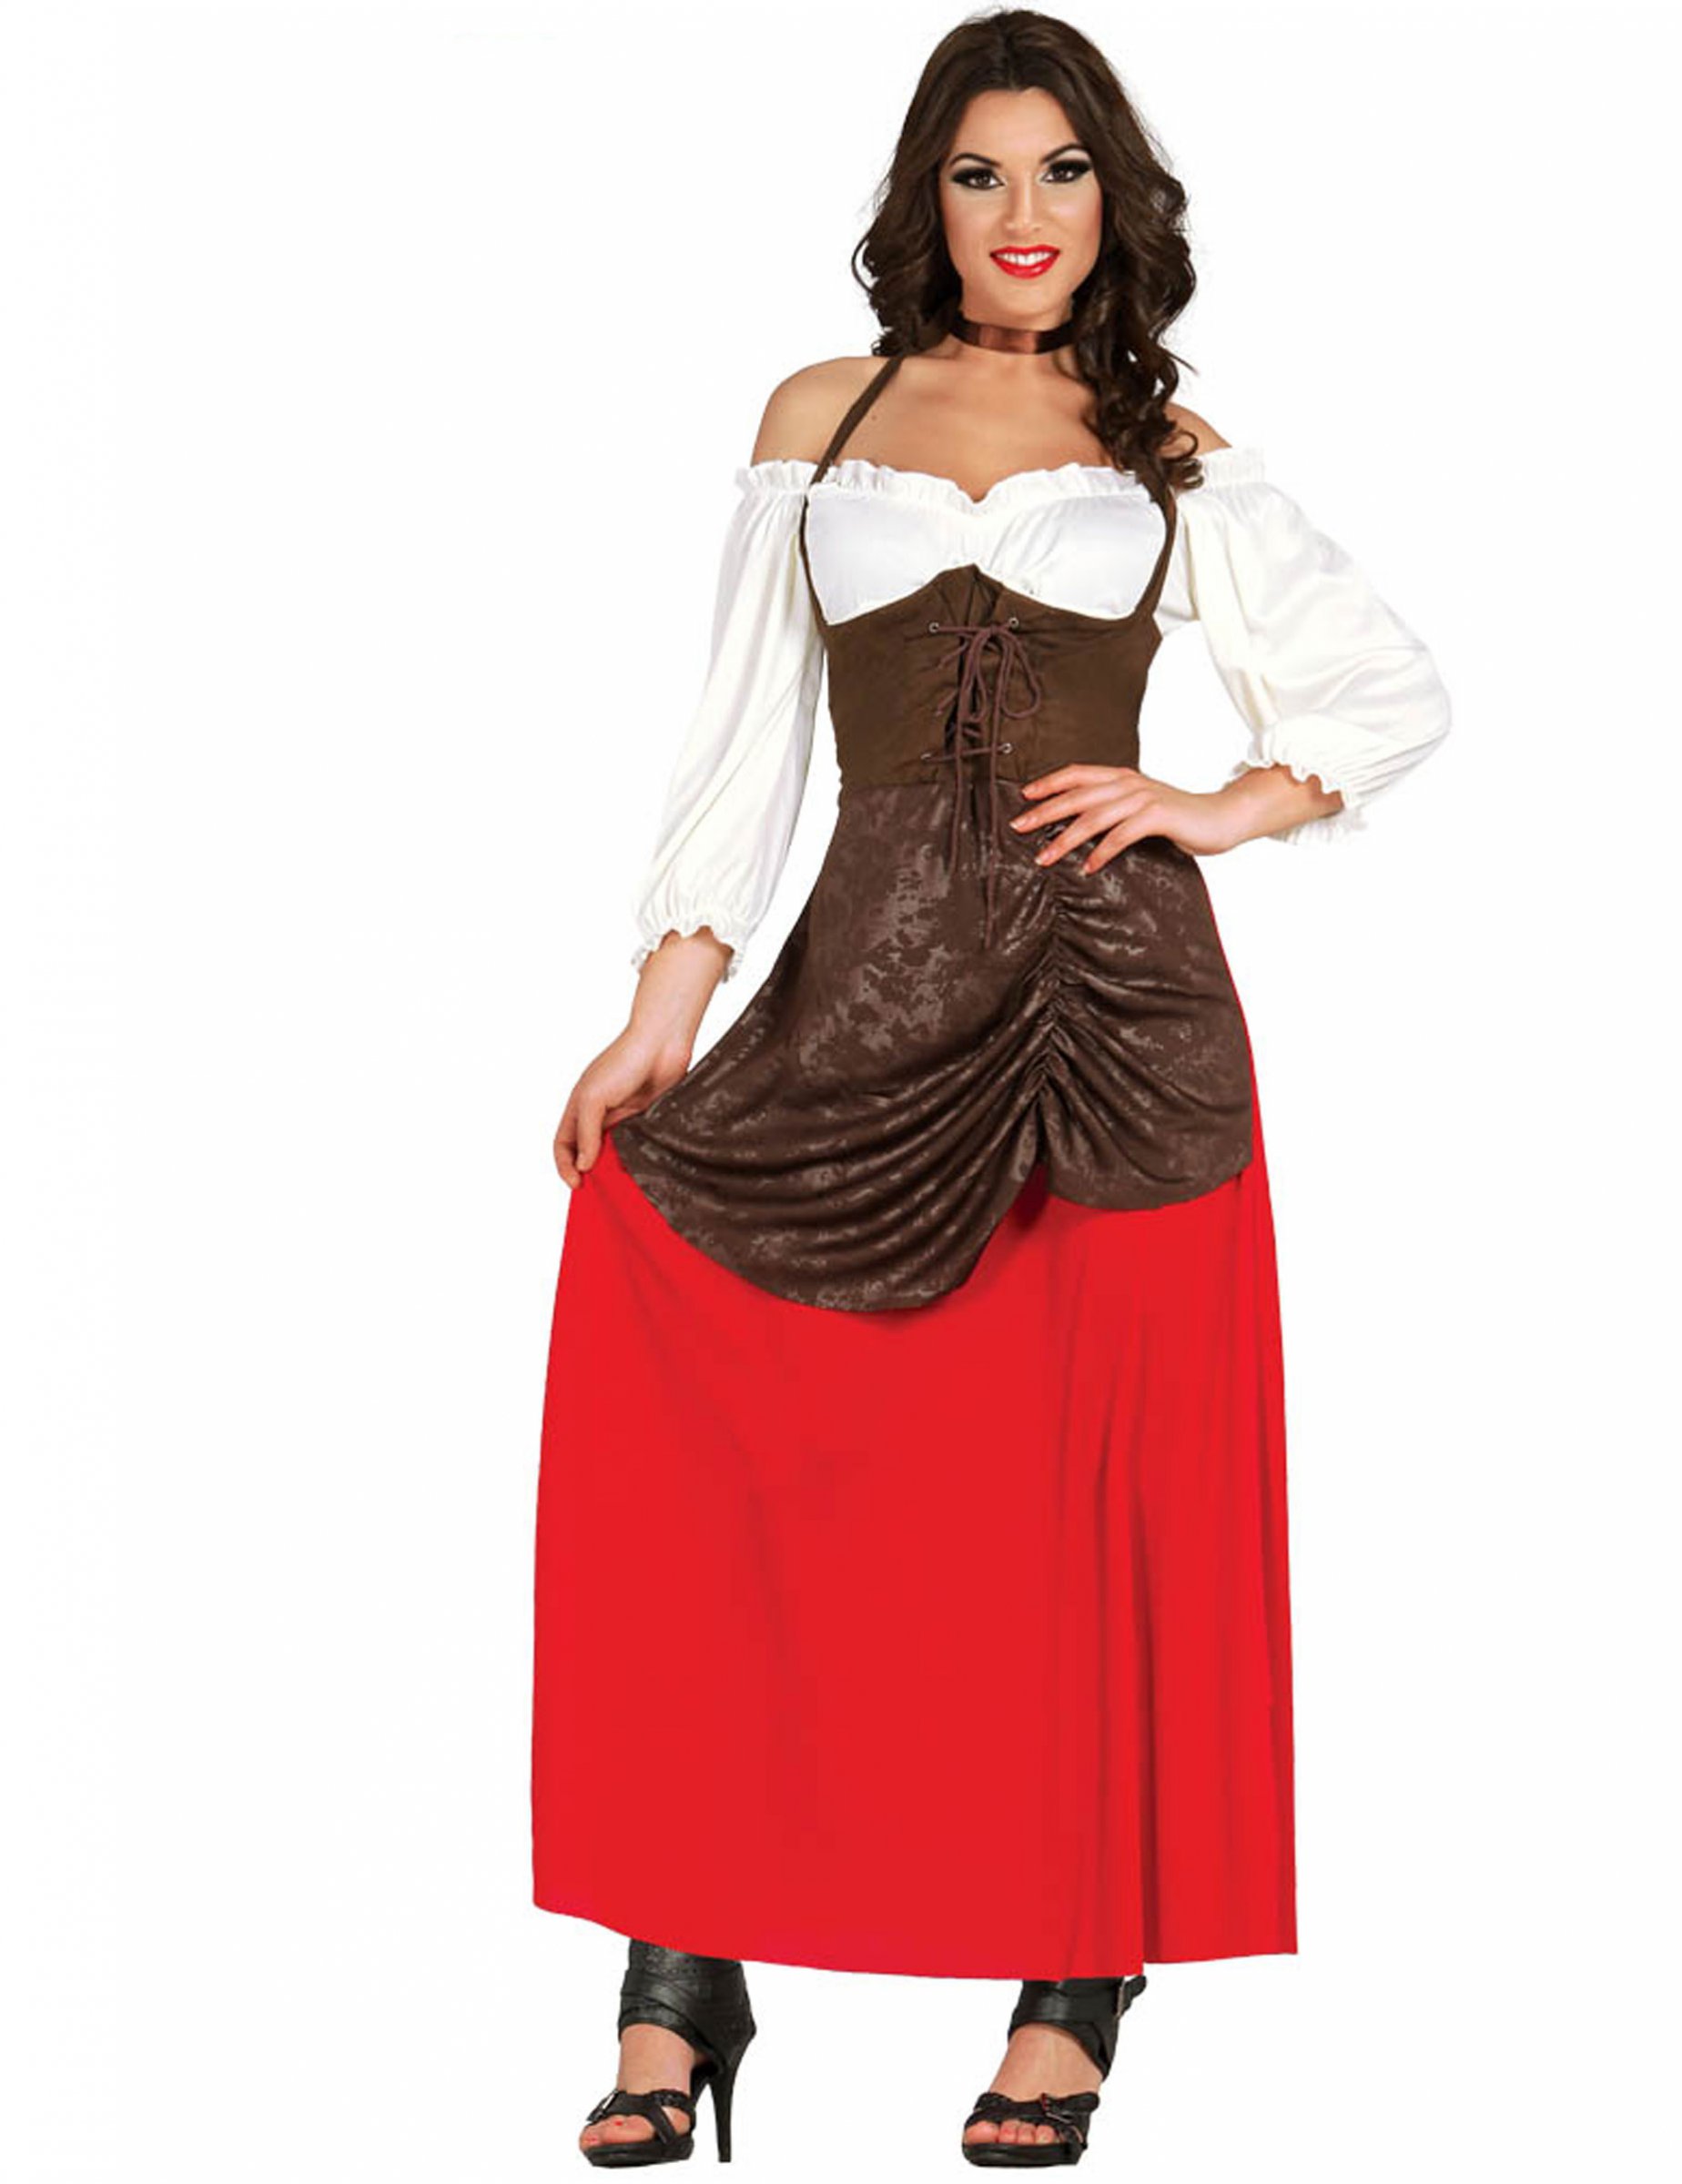 Wirtin-Kostüm für Damen weiss-braun-rot von FIESTAS GUIRCA, S.L.